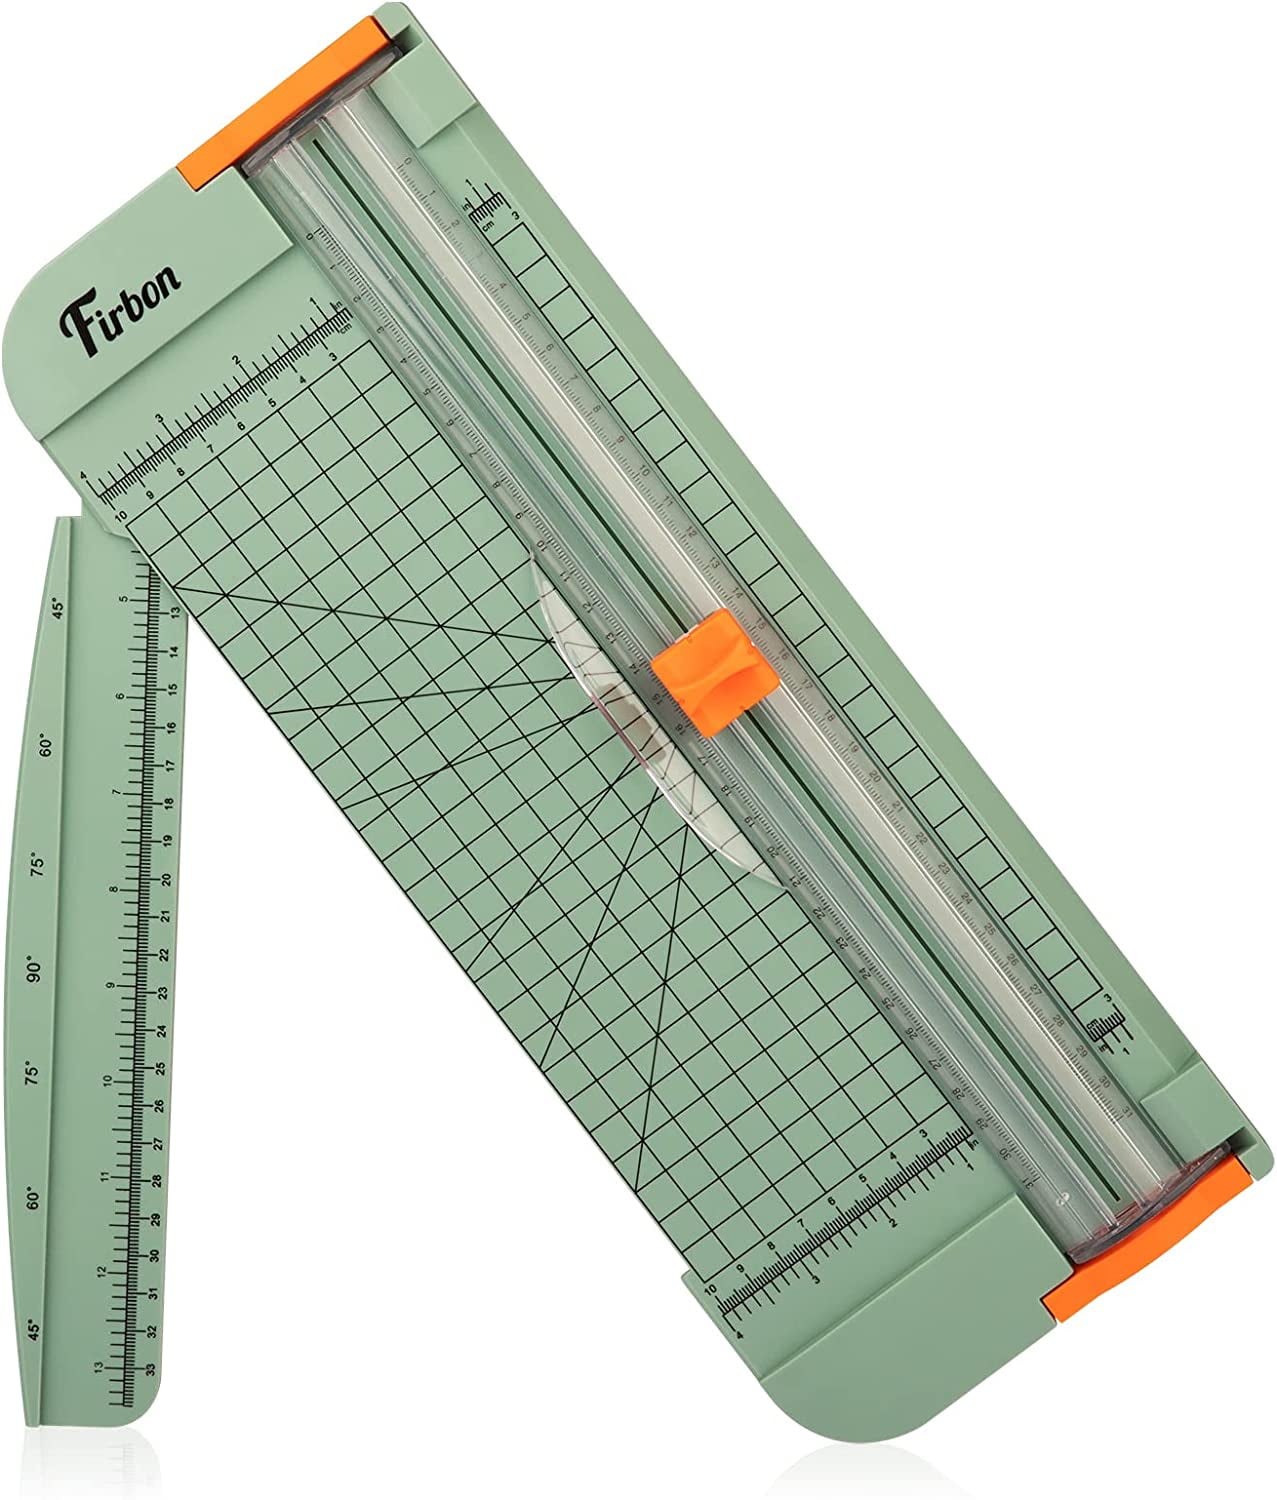 Firbon 12 Inch Titanium A4 Paper Cutter - Black (Firbon0121) for sale  online